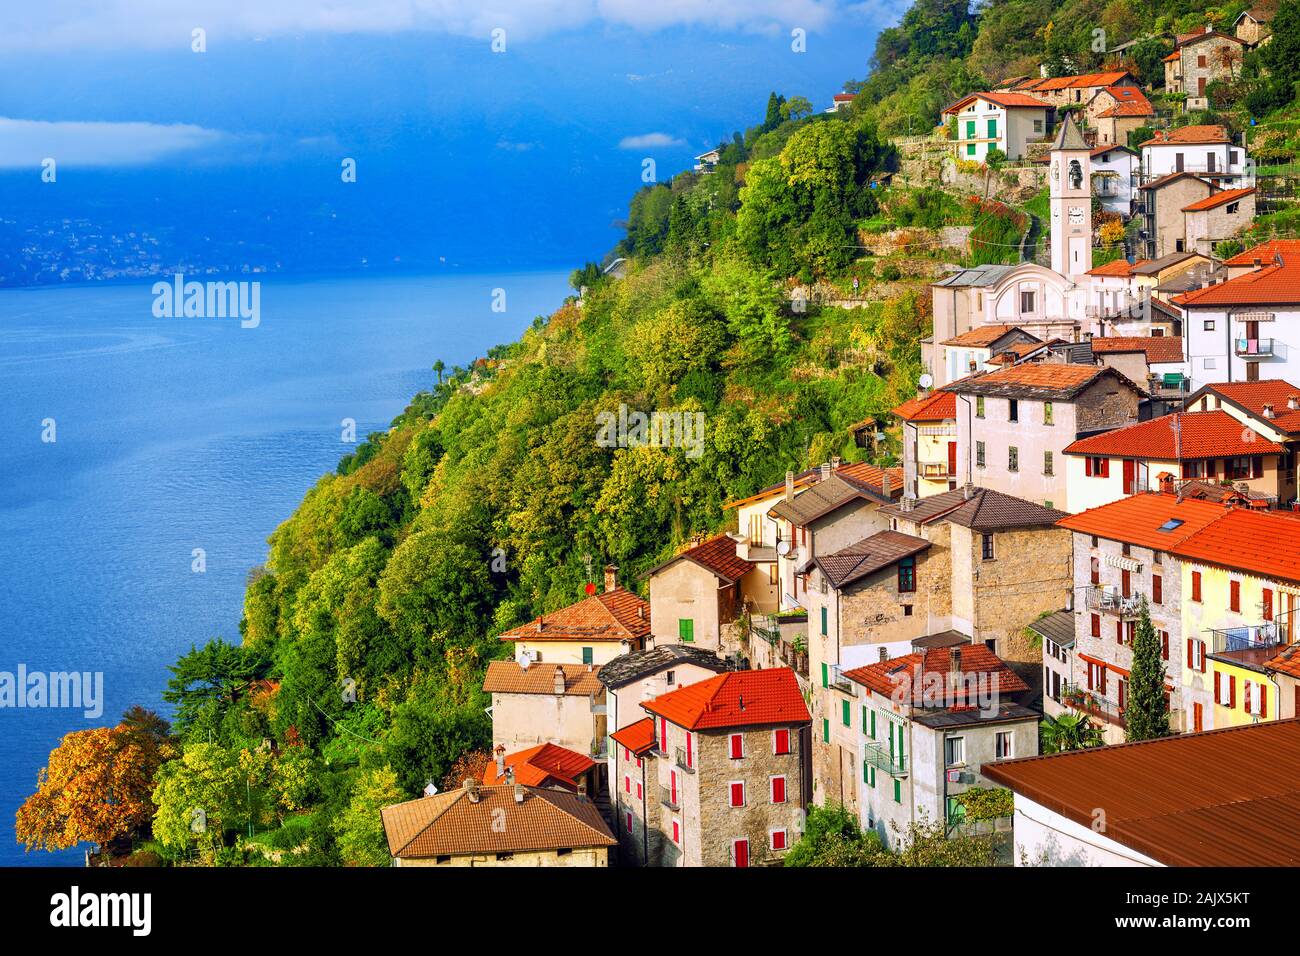 Le lac de Côme, Italie, vue sur la ville pittoresque Maternitépas situé sur une pente de montagne escarpée Banque D'Images